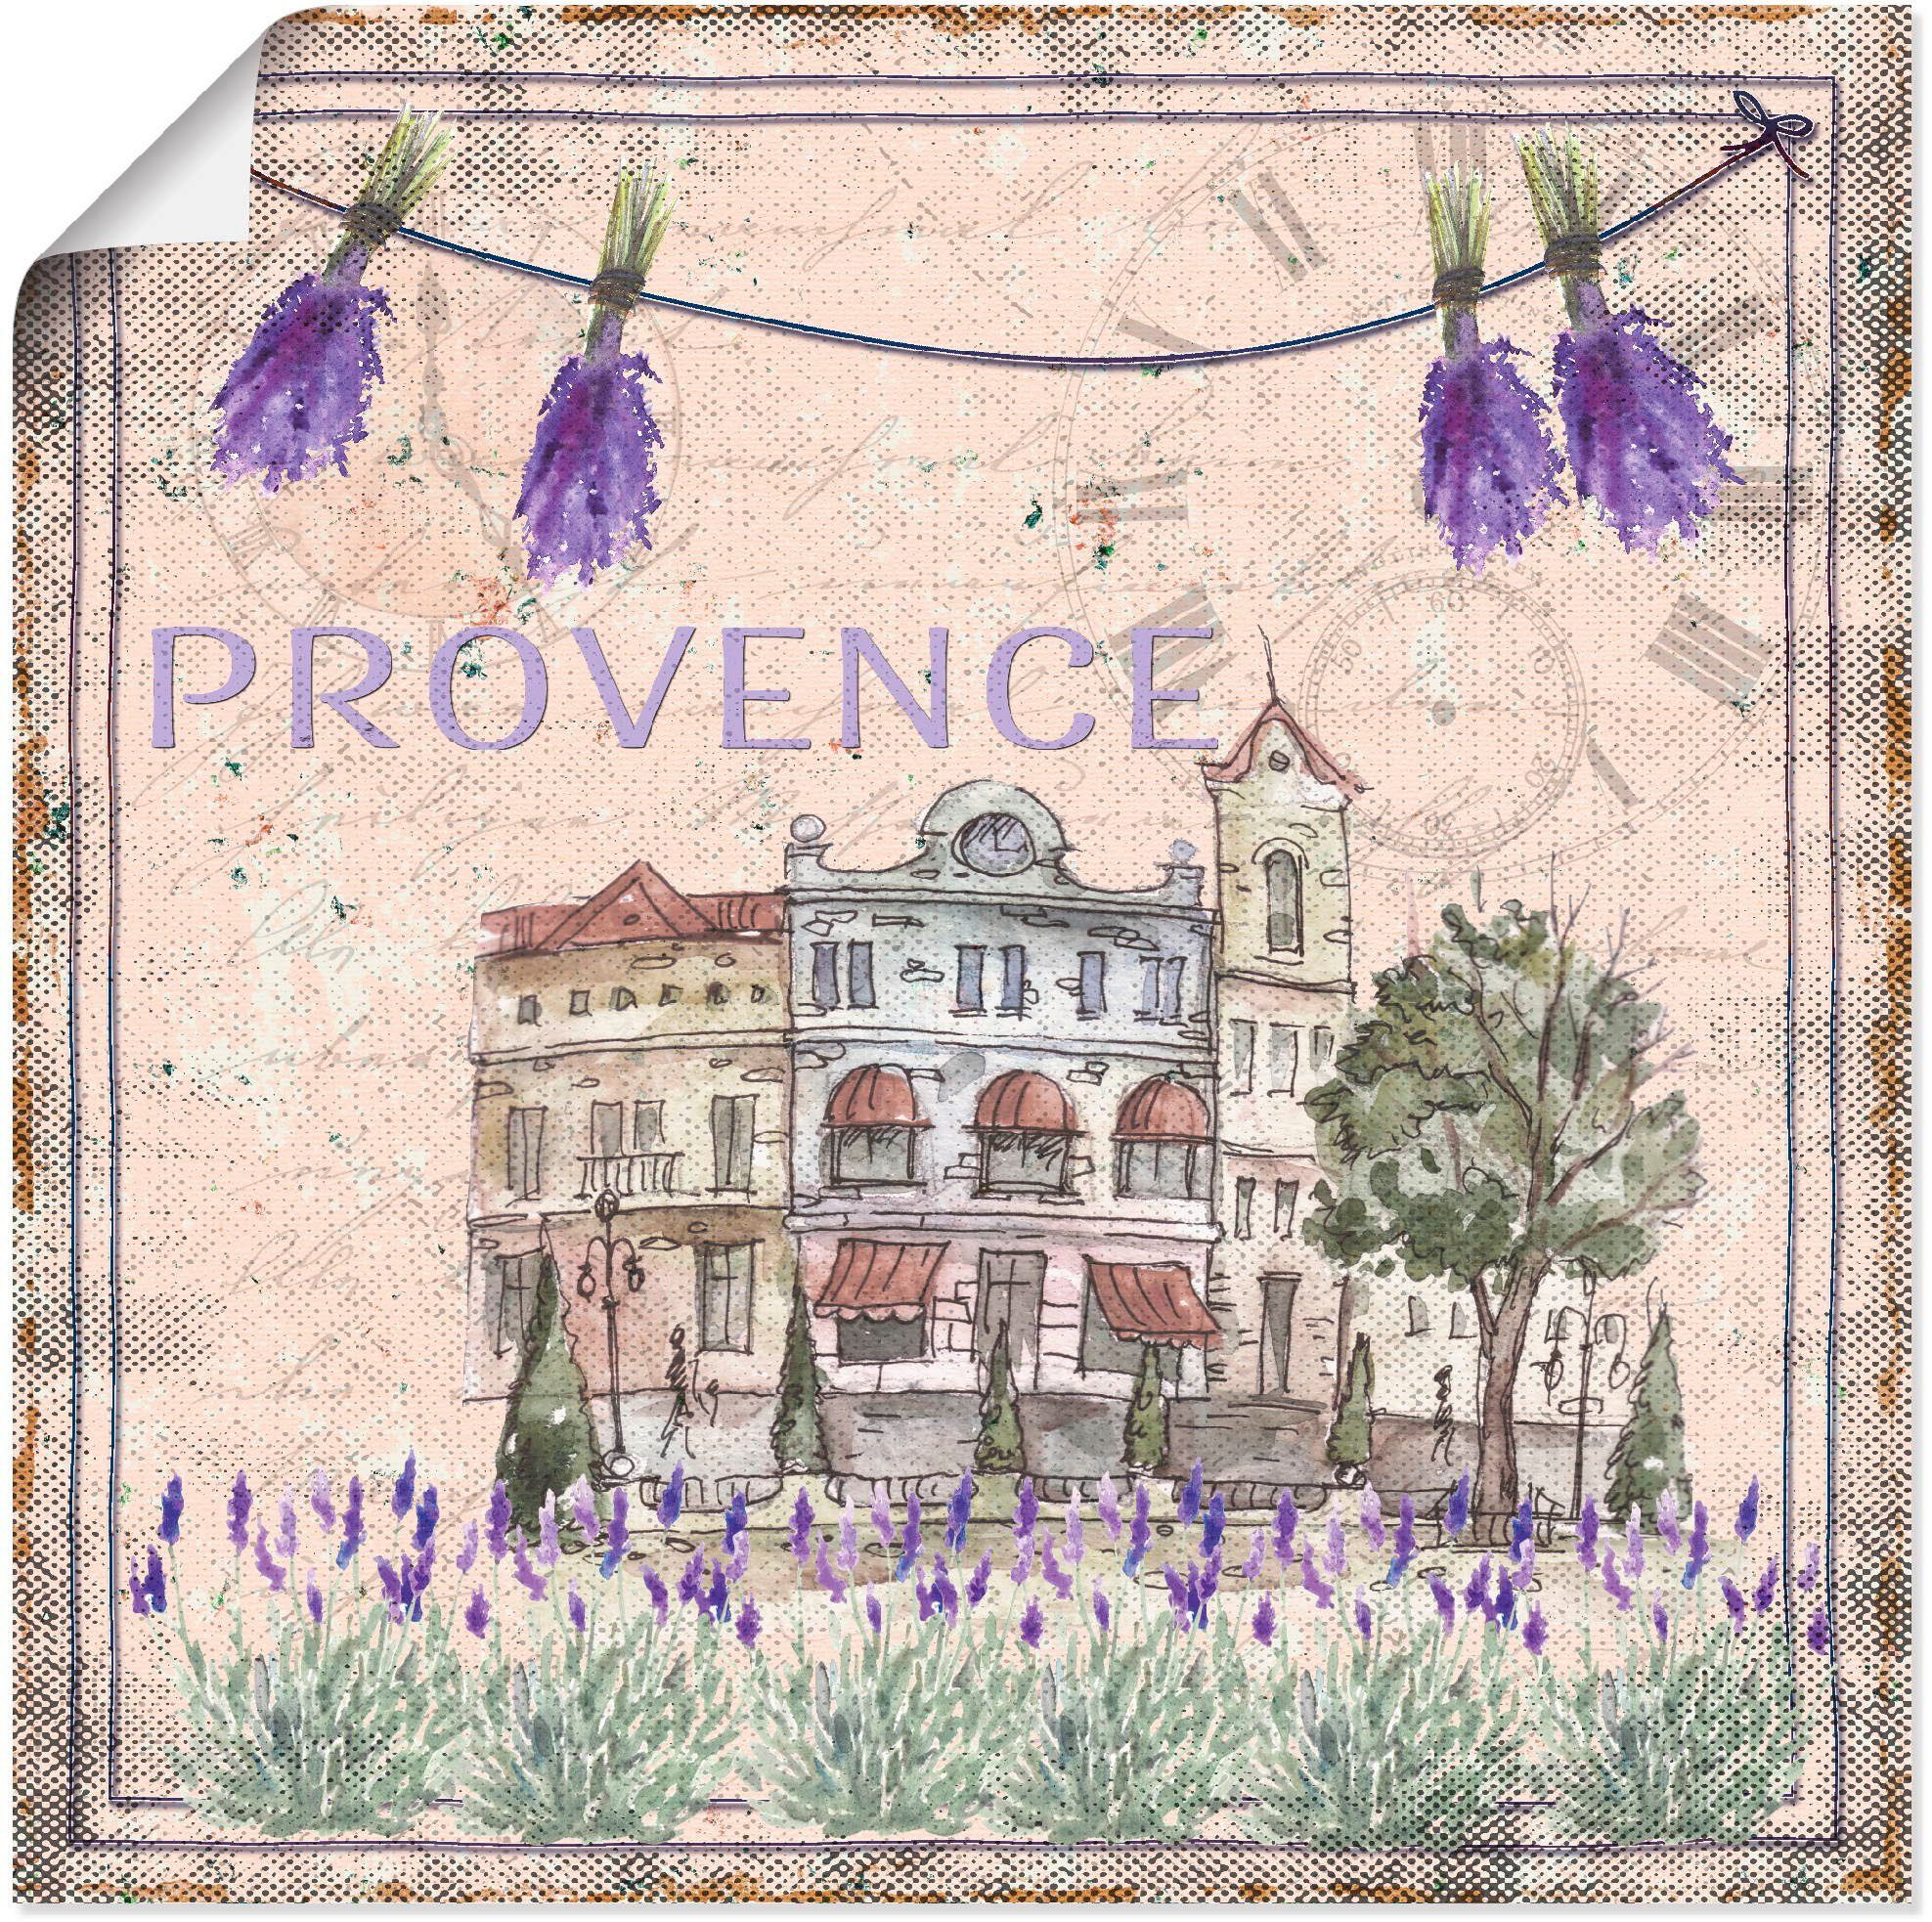 Artland Artprint Provence-Mijn liefde in vele afmetingen & productsoorten - artprint van aluminium / artprint voor buiten, artprint op linnen, poster, muursticker / wandfolie ook g